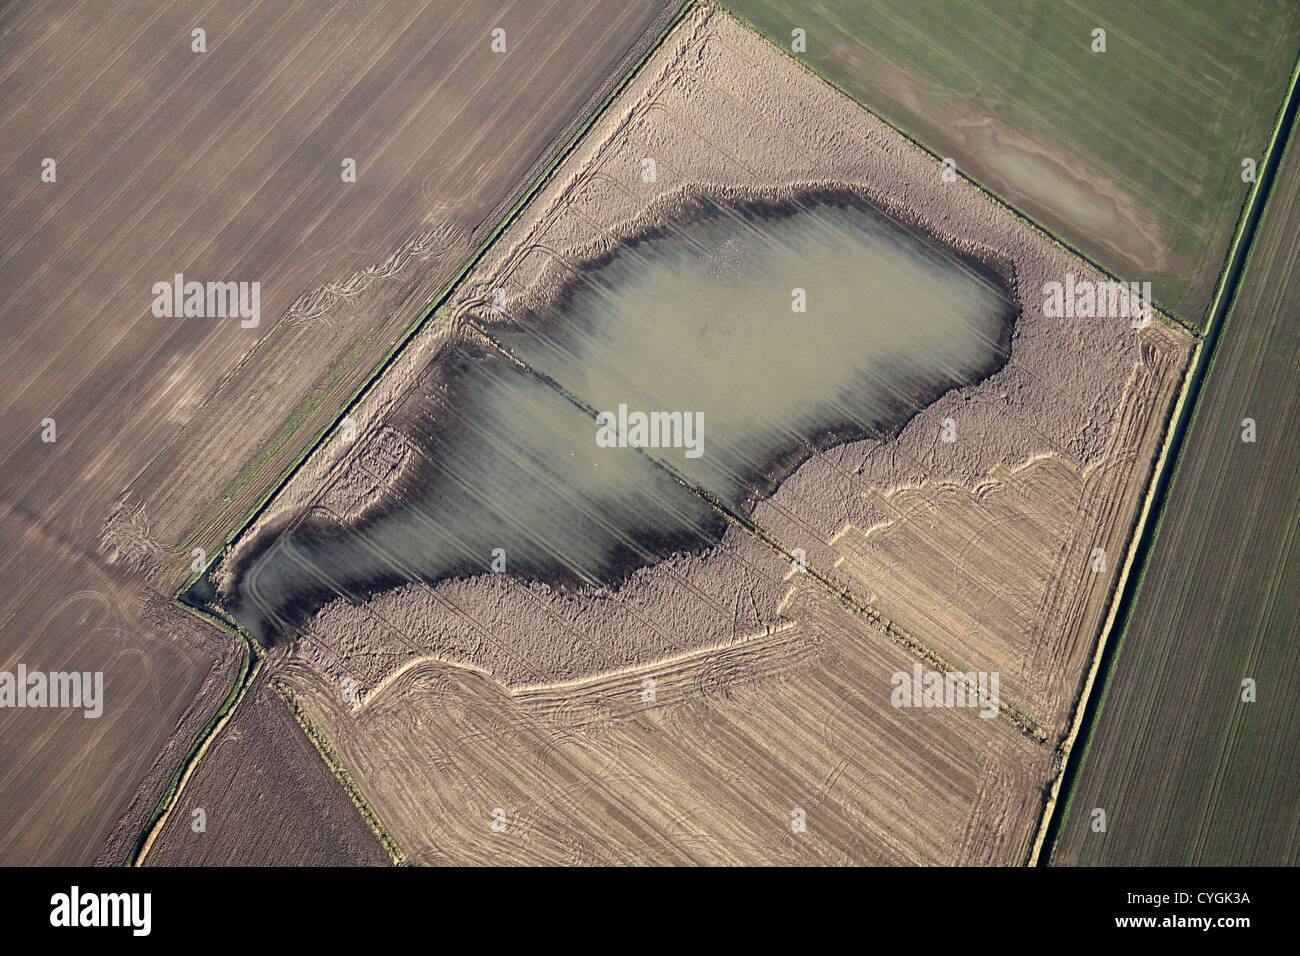 Vue aérienne de l'endommagement des cultures à partir de l'excès d'eau et des inondations à la terre Banque D'Images